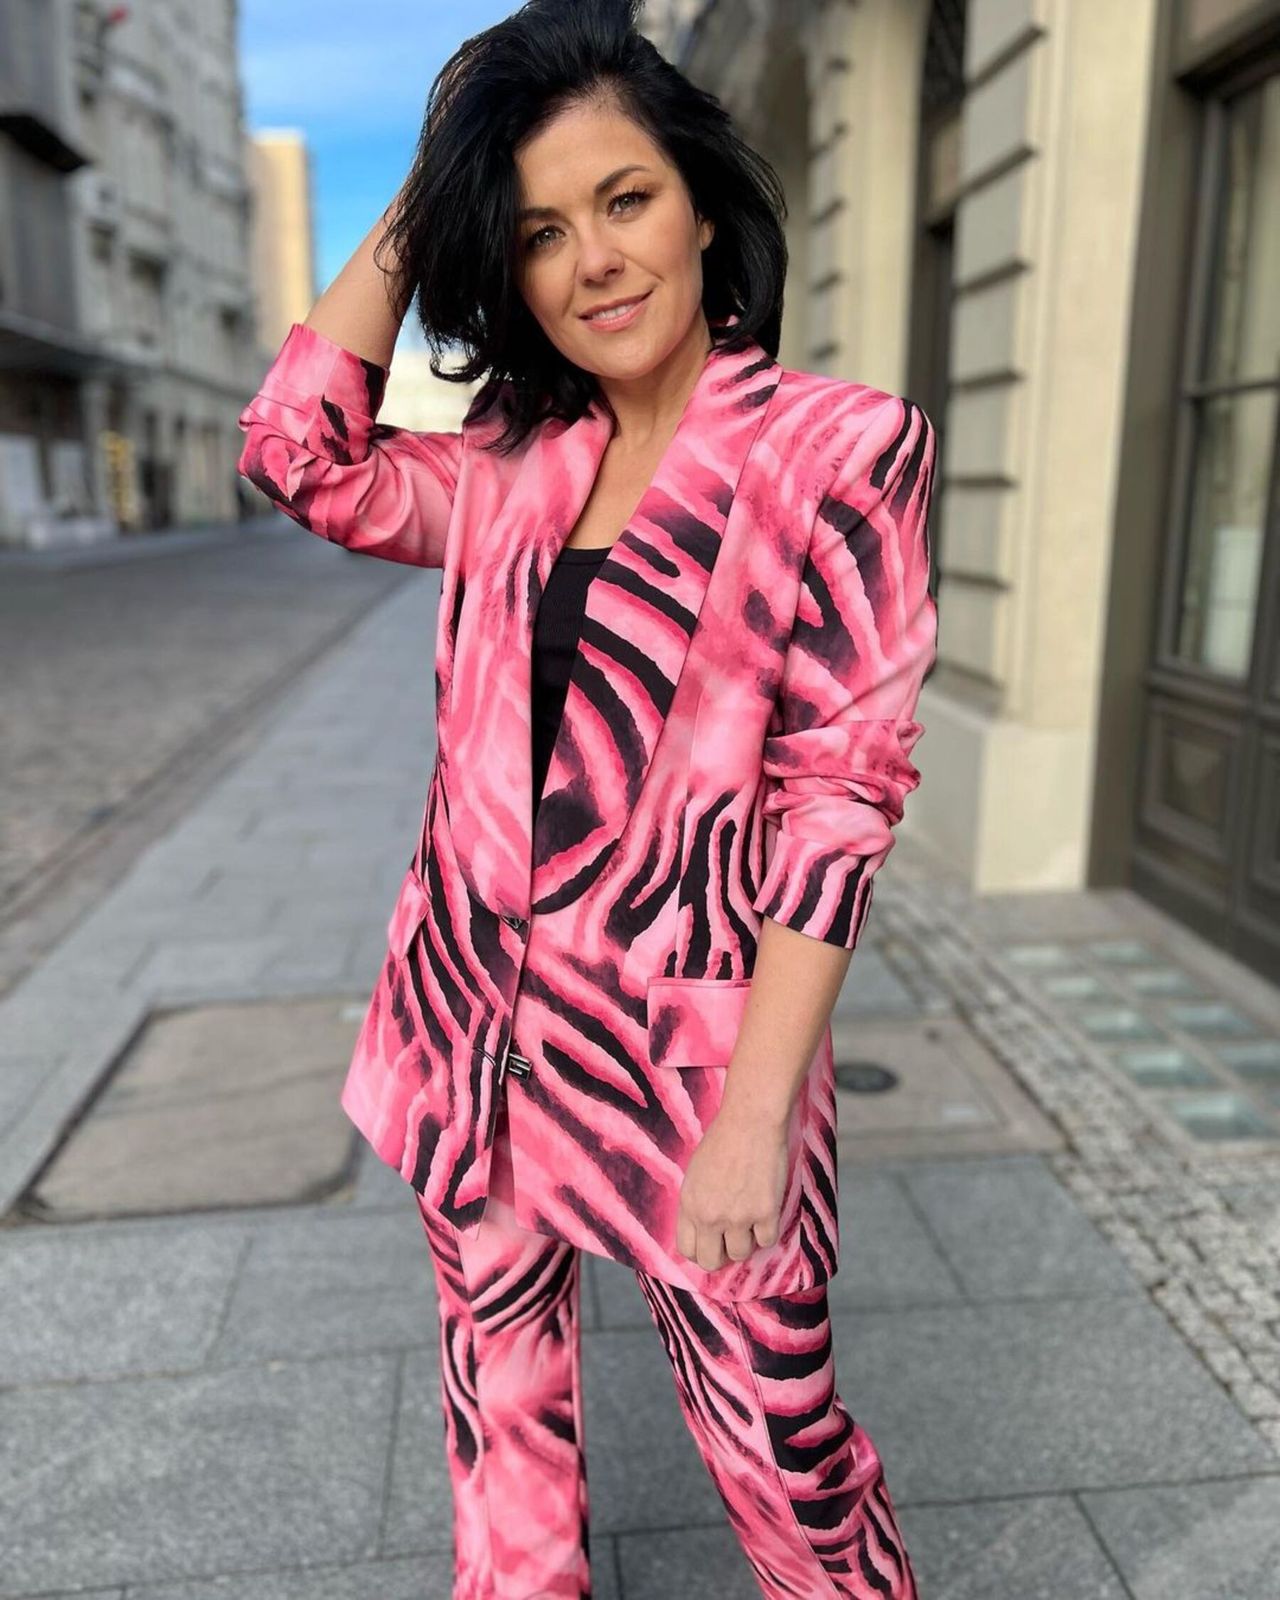 Katarzyna Cichopek w różowo-czarnym garniturze
Instagram/katarzynacichopek